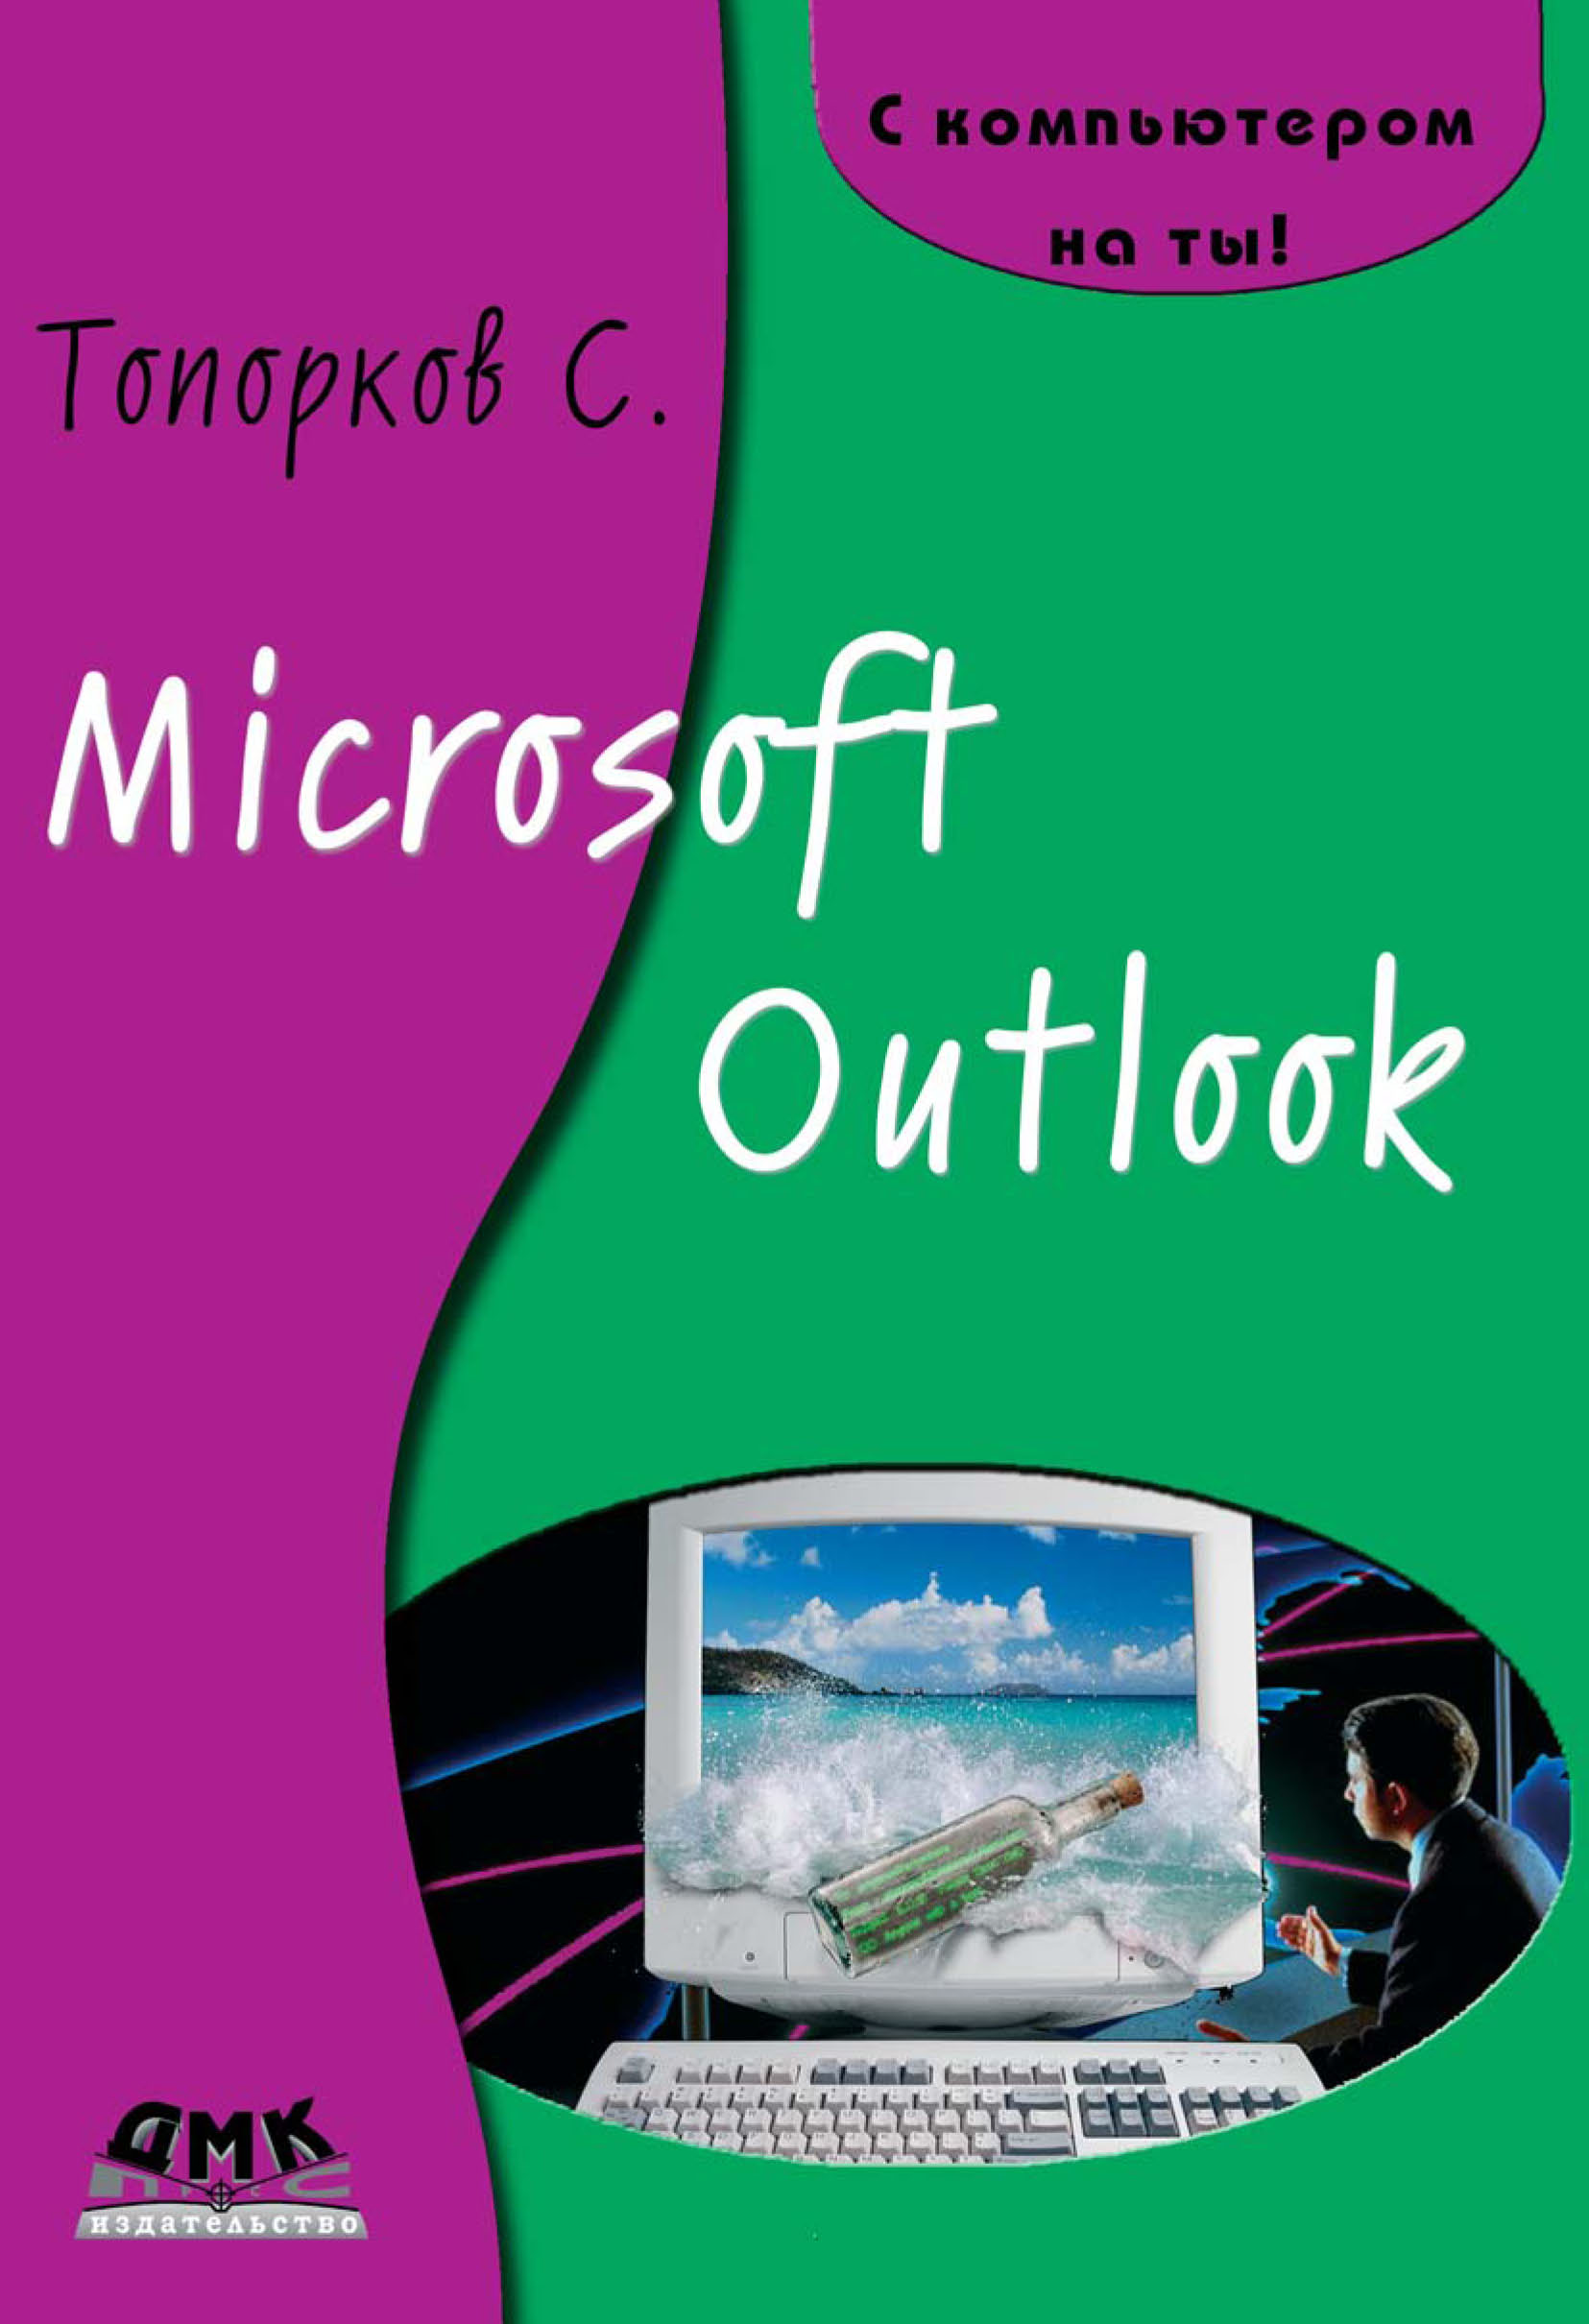 Книга С компьютером на ты! Microsoft Outlook созданная С. С. Топорков может относится к жанру интернет, программы, руководства. Стоимость электронной книги Microsoft Outlook с идентификатором 6251311 составляет 119.00 руб.